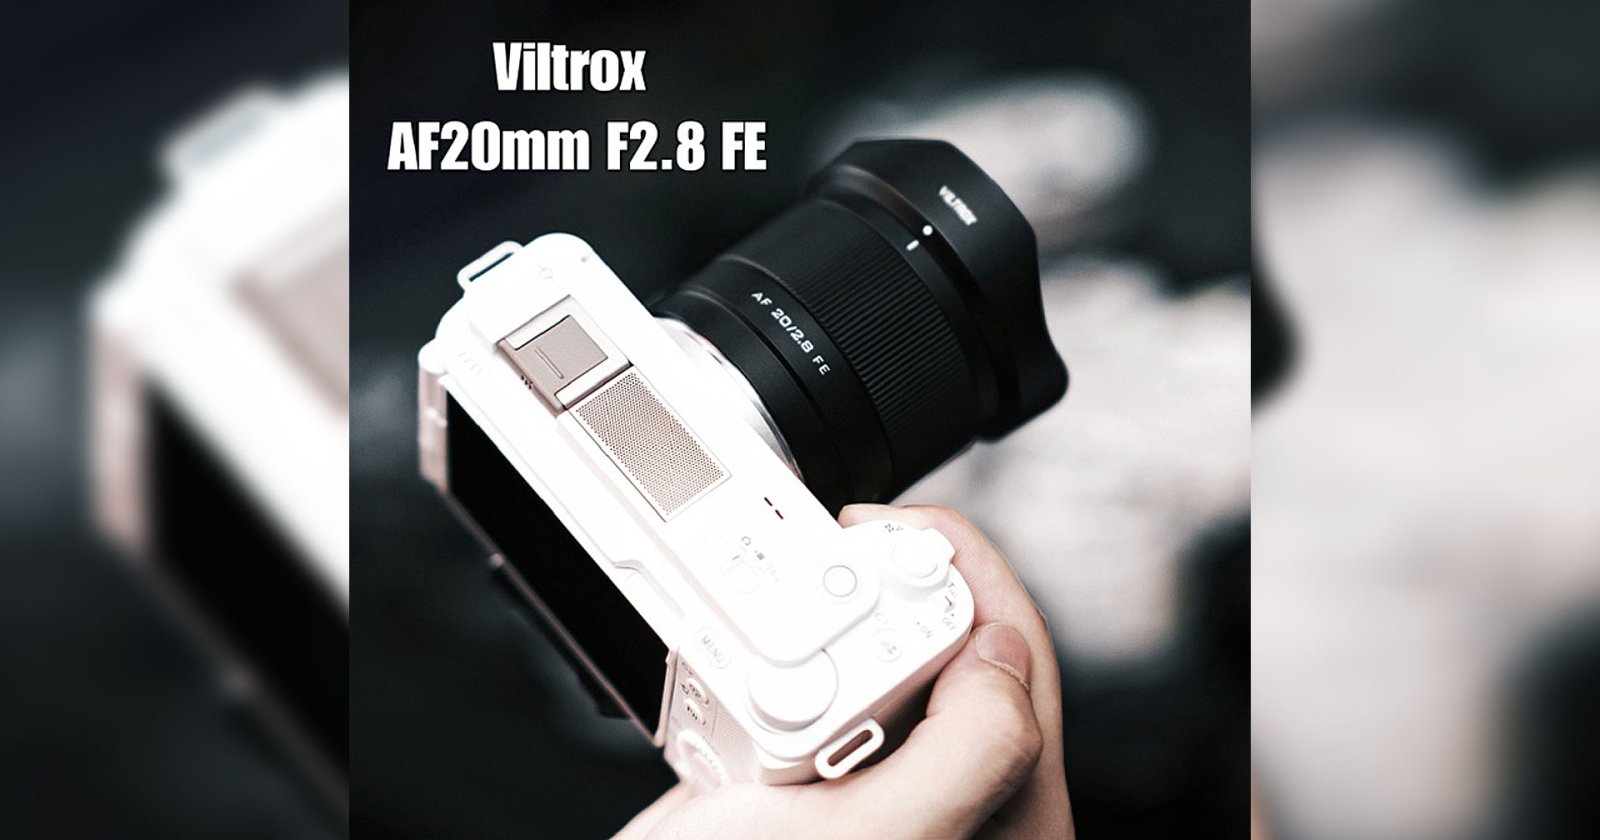 เผยภาพหลุด Viltrox AF 20mm F2.8 เลนส์ Ultra-Wide สำหรับกล้องฟูลเฟรมเรอร์เลส ก่อนเปิดตัว 6 ตุลาคม